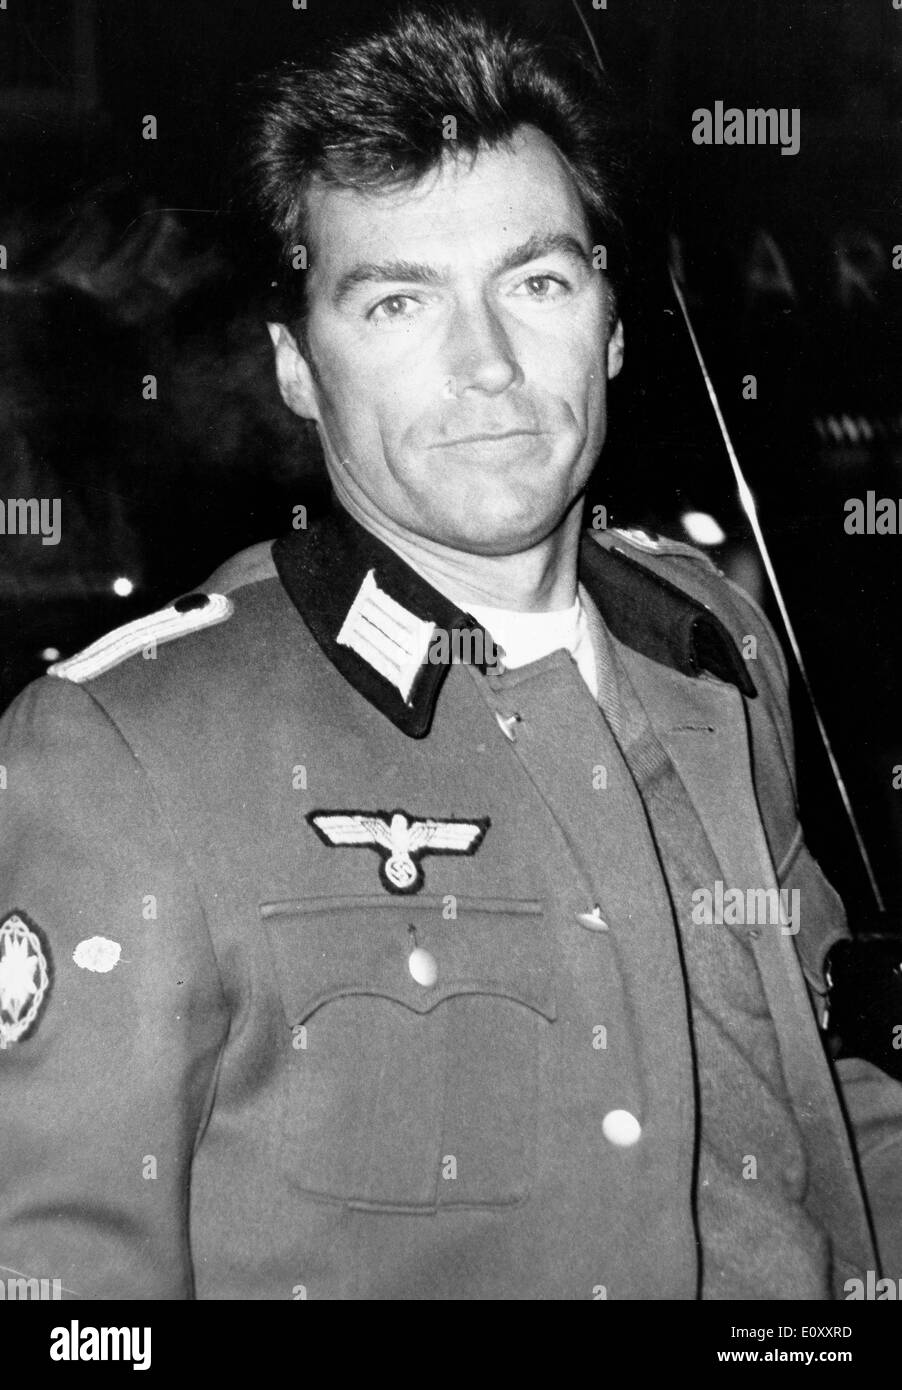 Clint Eastwood acteur vêtu d'un uniforme militaire Banque D'Images